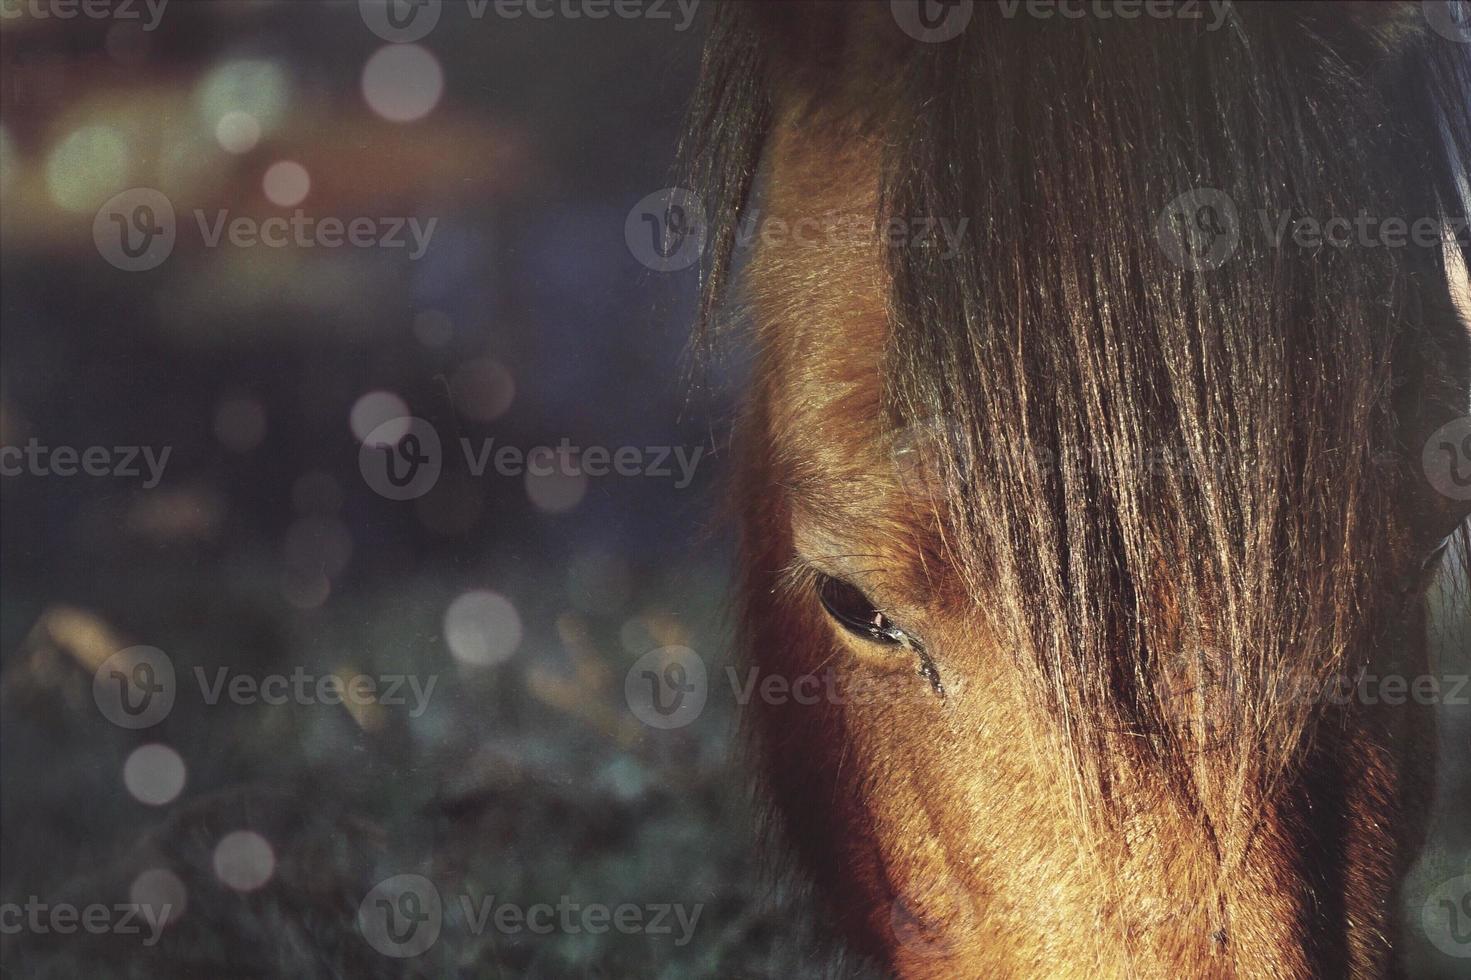 schönes braunes Pferdeporträt auf der Wiese foto